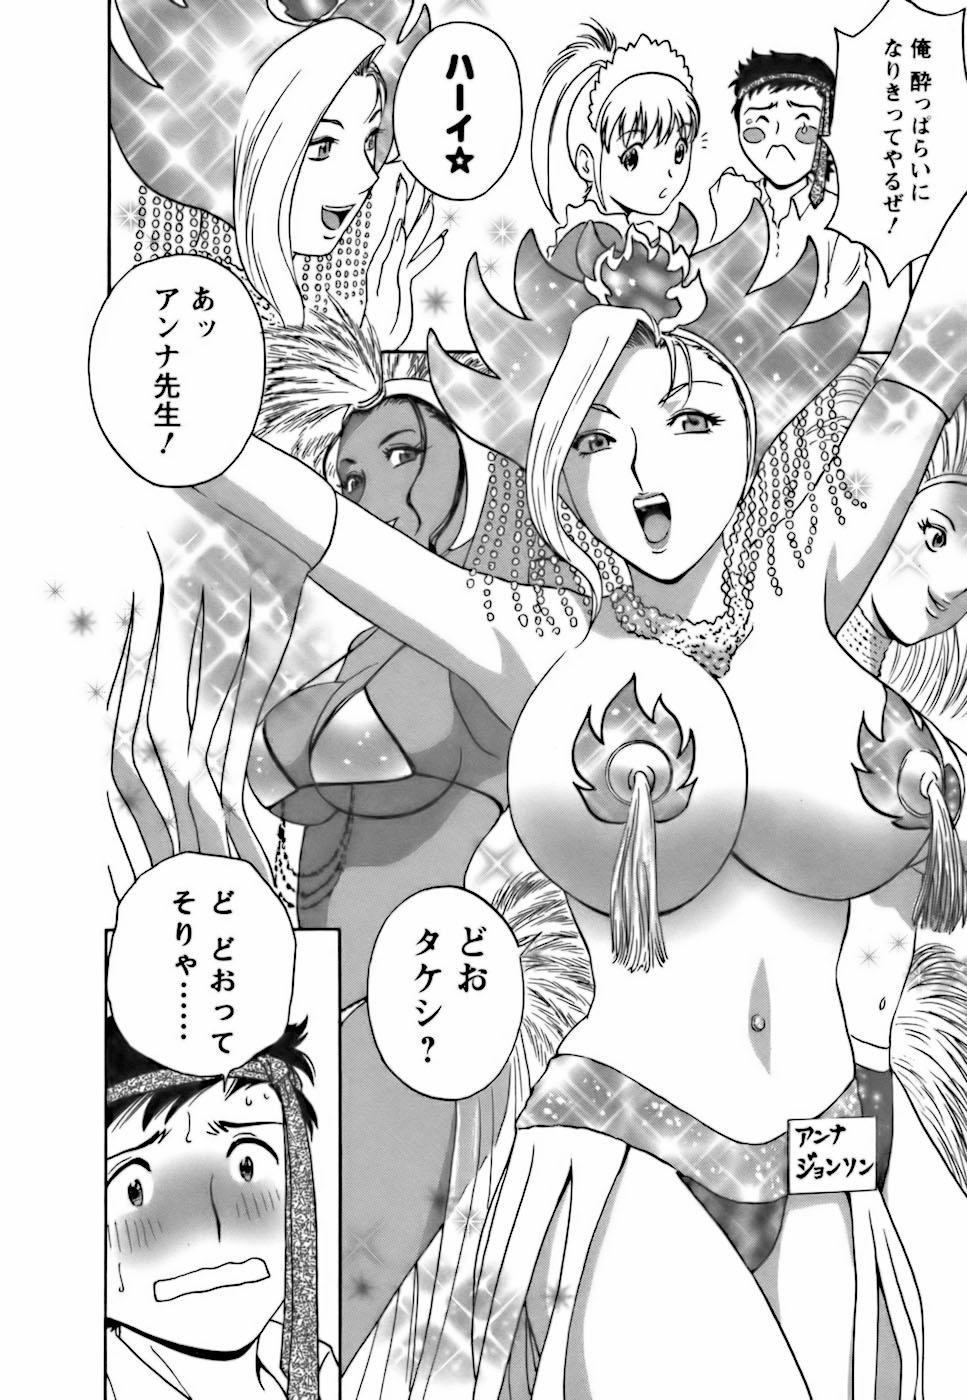 [Hidemaru] Mo-Retsu! Boin Sensei (Boing Boing Teacher) Vol.3 112